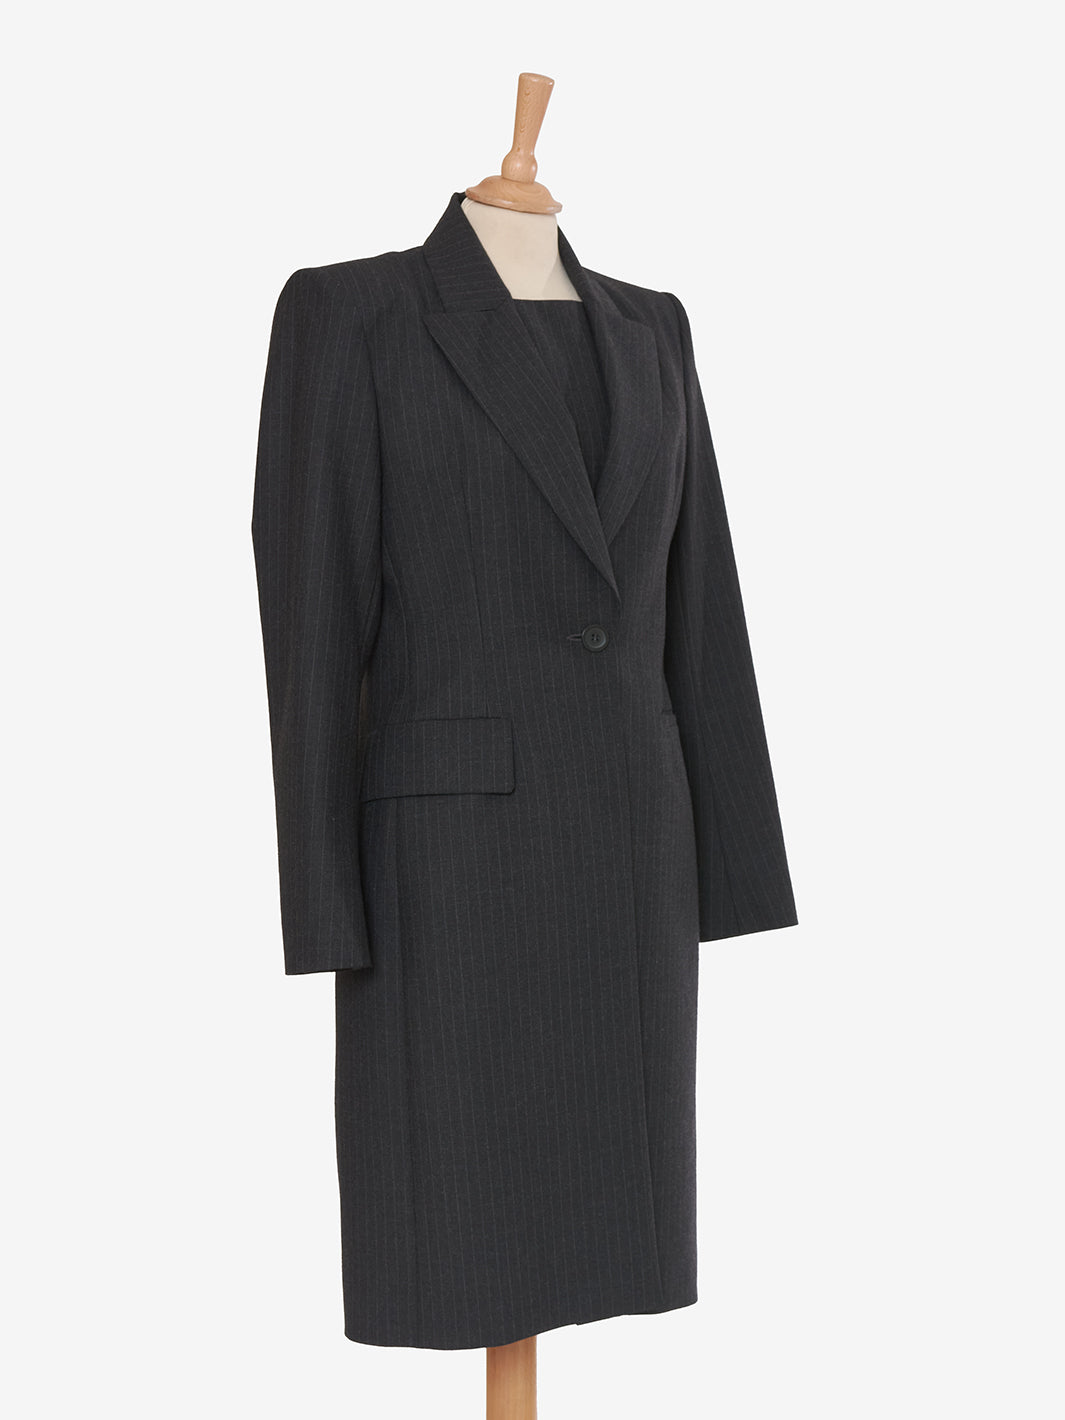 Vintage gray wool pinstripe suit